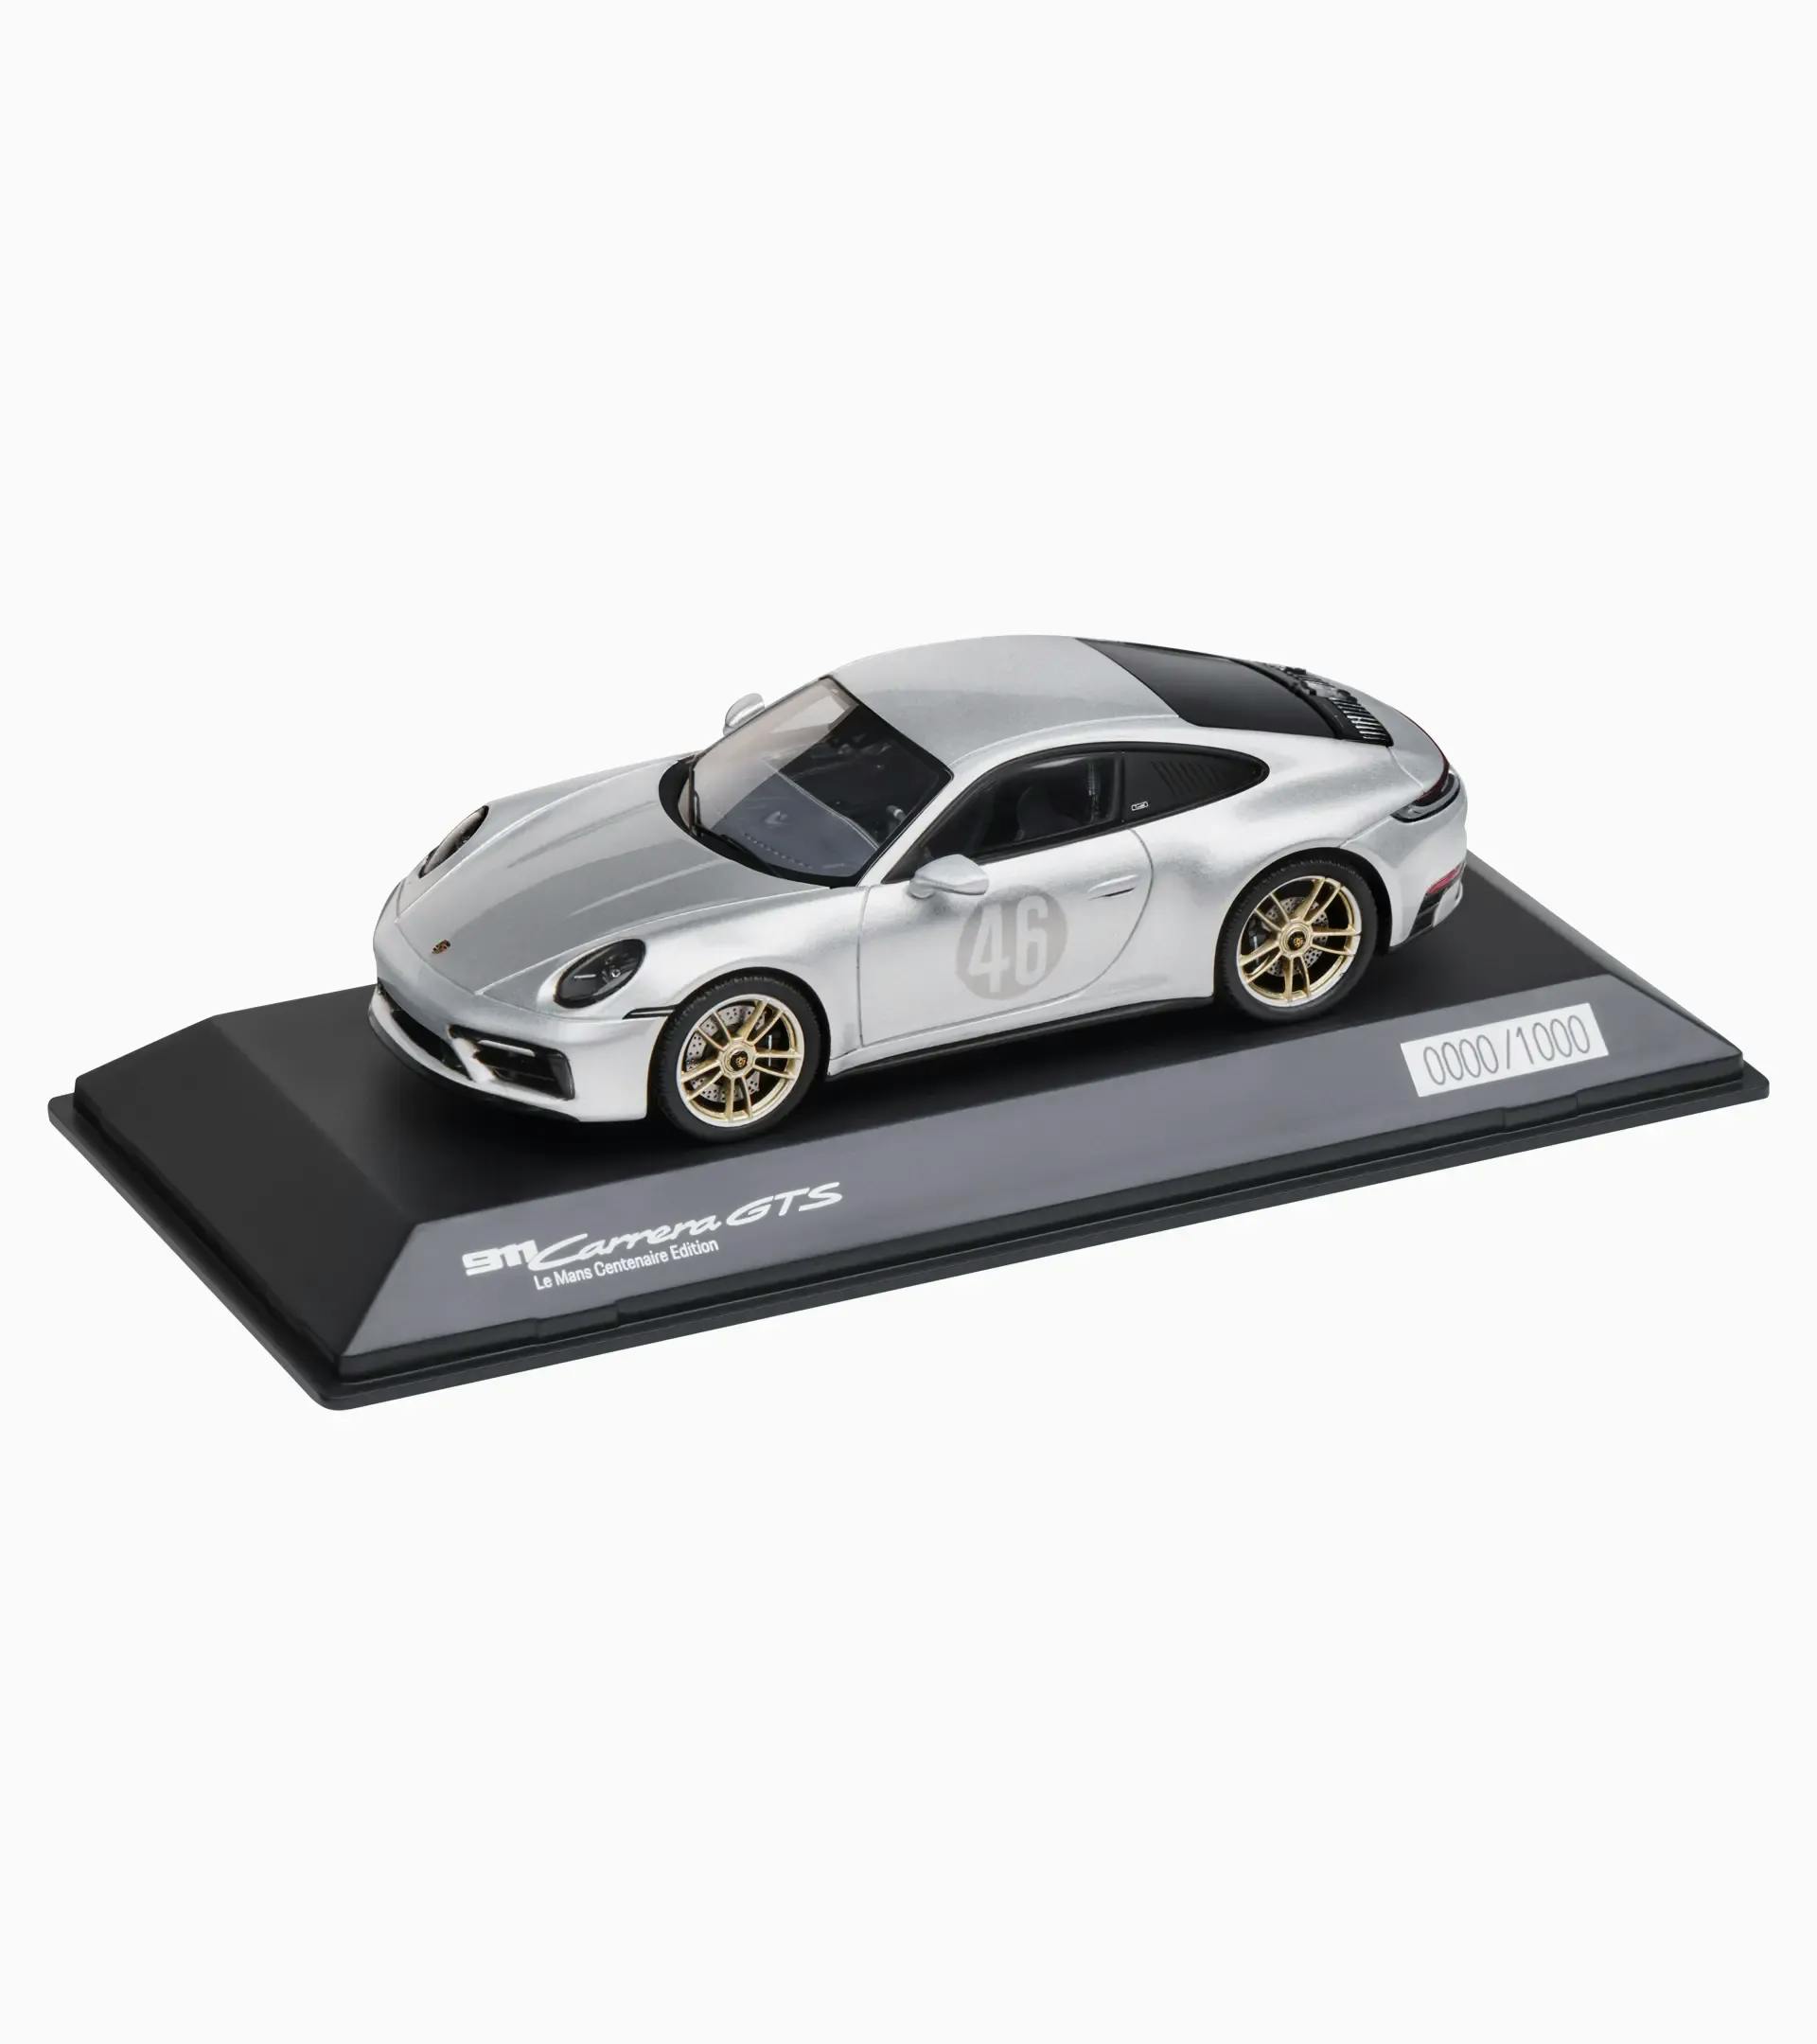 Porsche 911 Carrera GTS Le Mans Centenaire Edition (992) – Ltd. 1